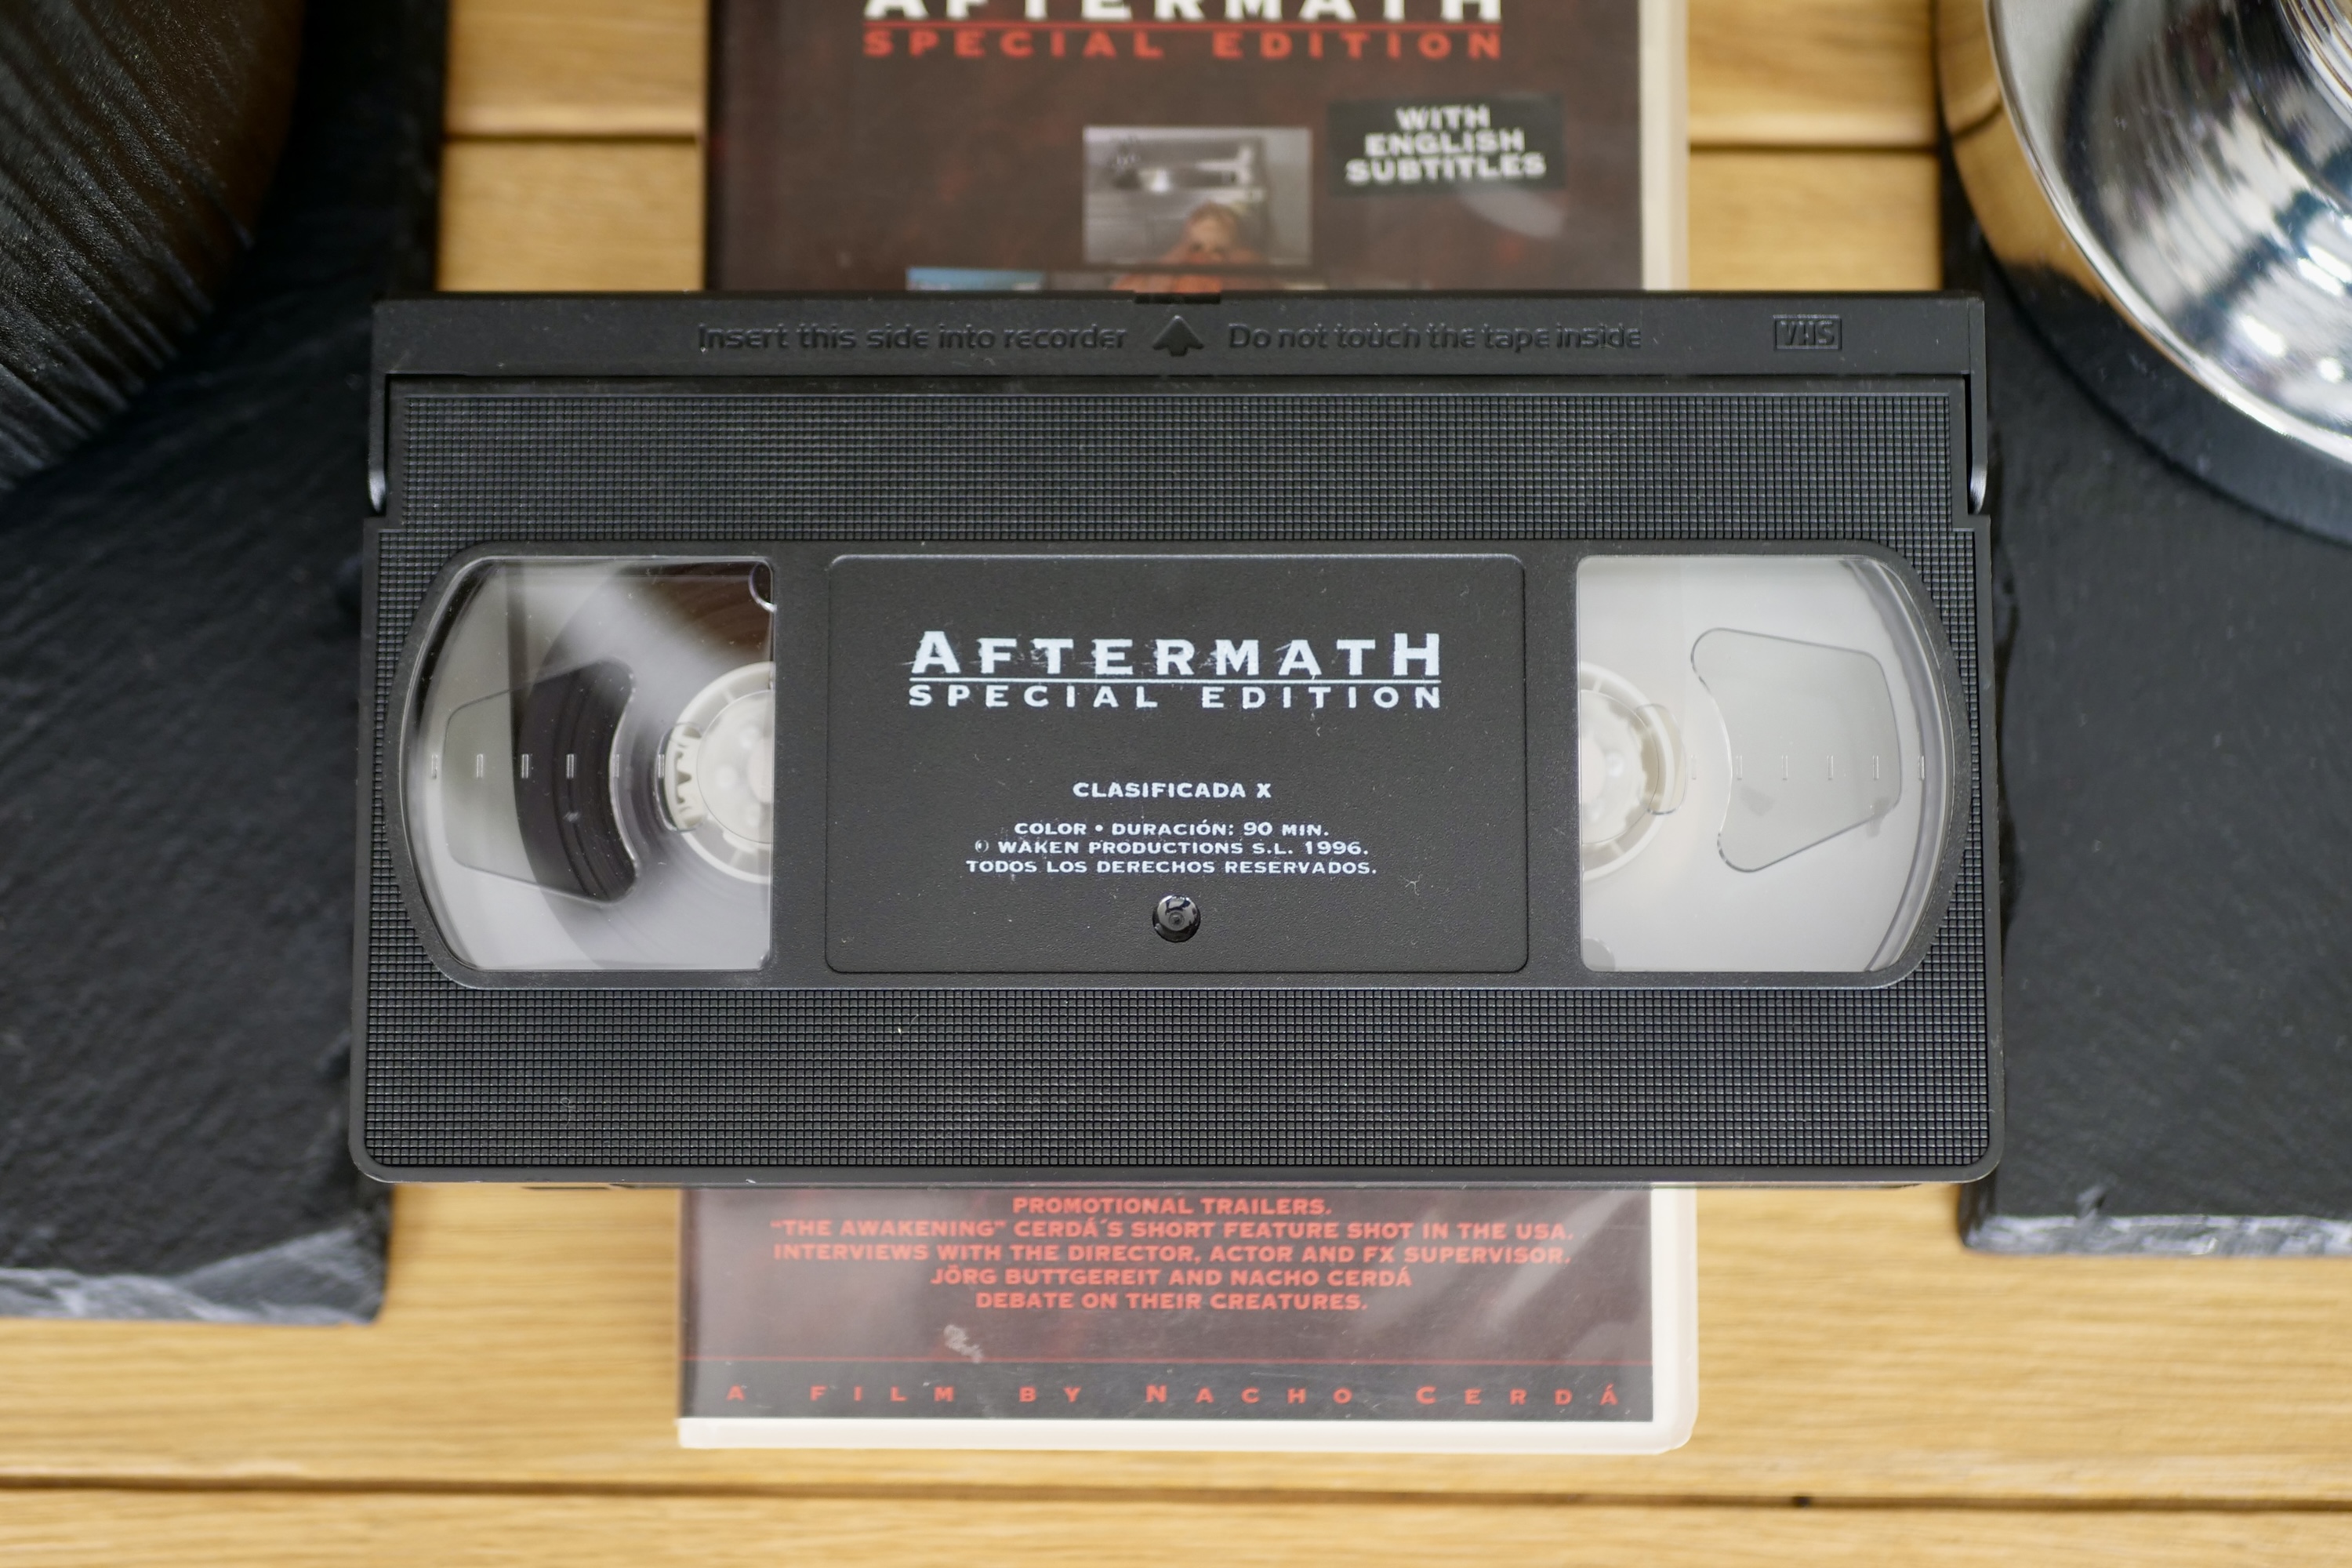 An Aftermath VHS cassette.